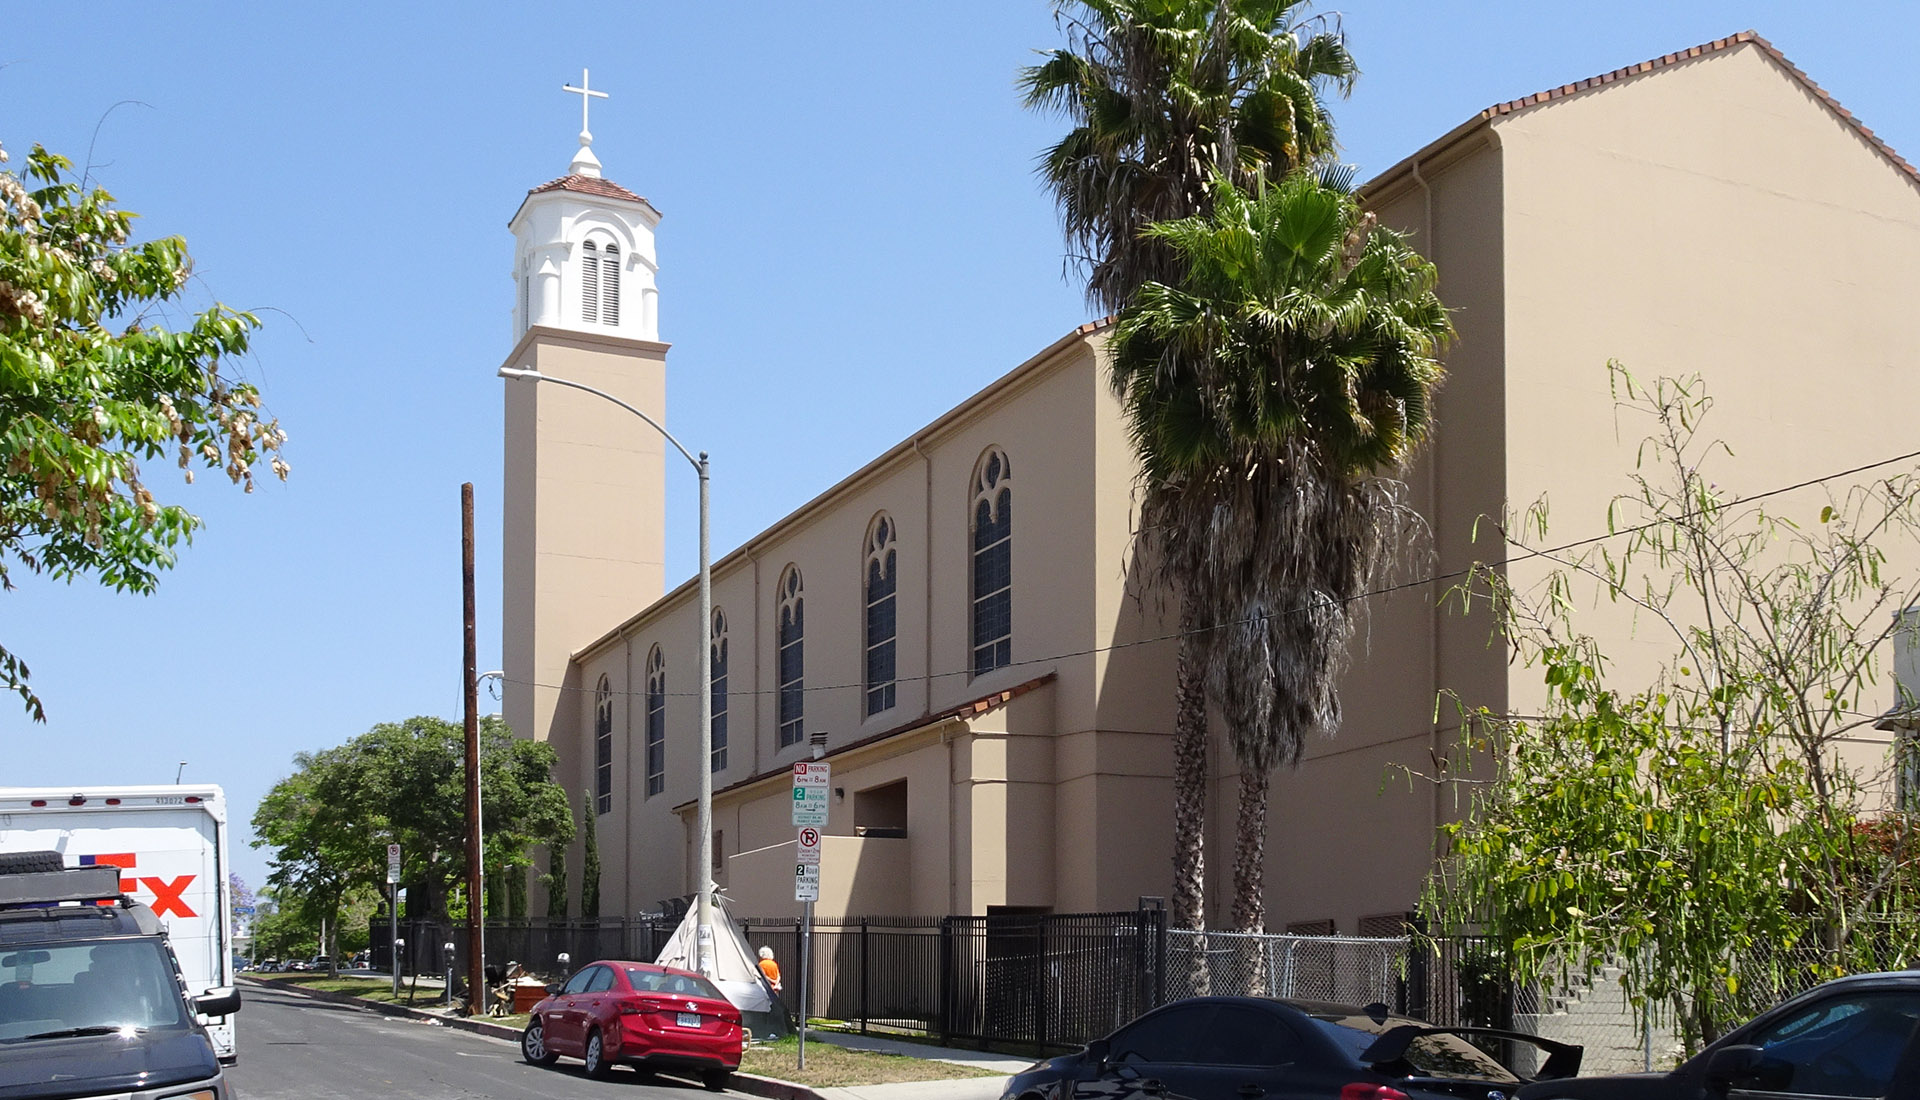 St. Kevin Catholic Church